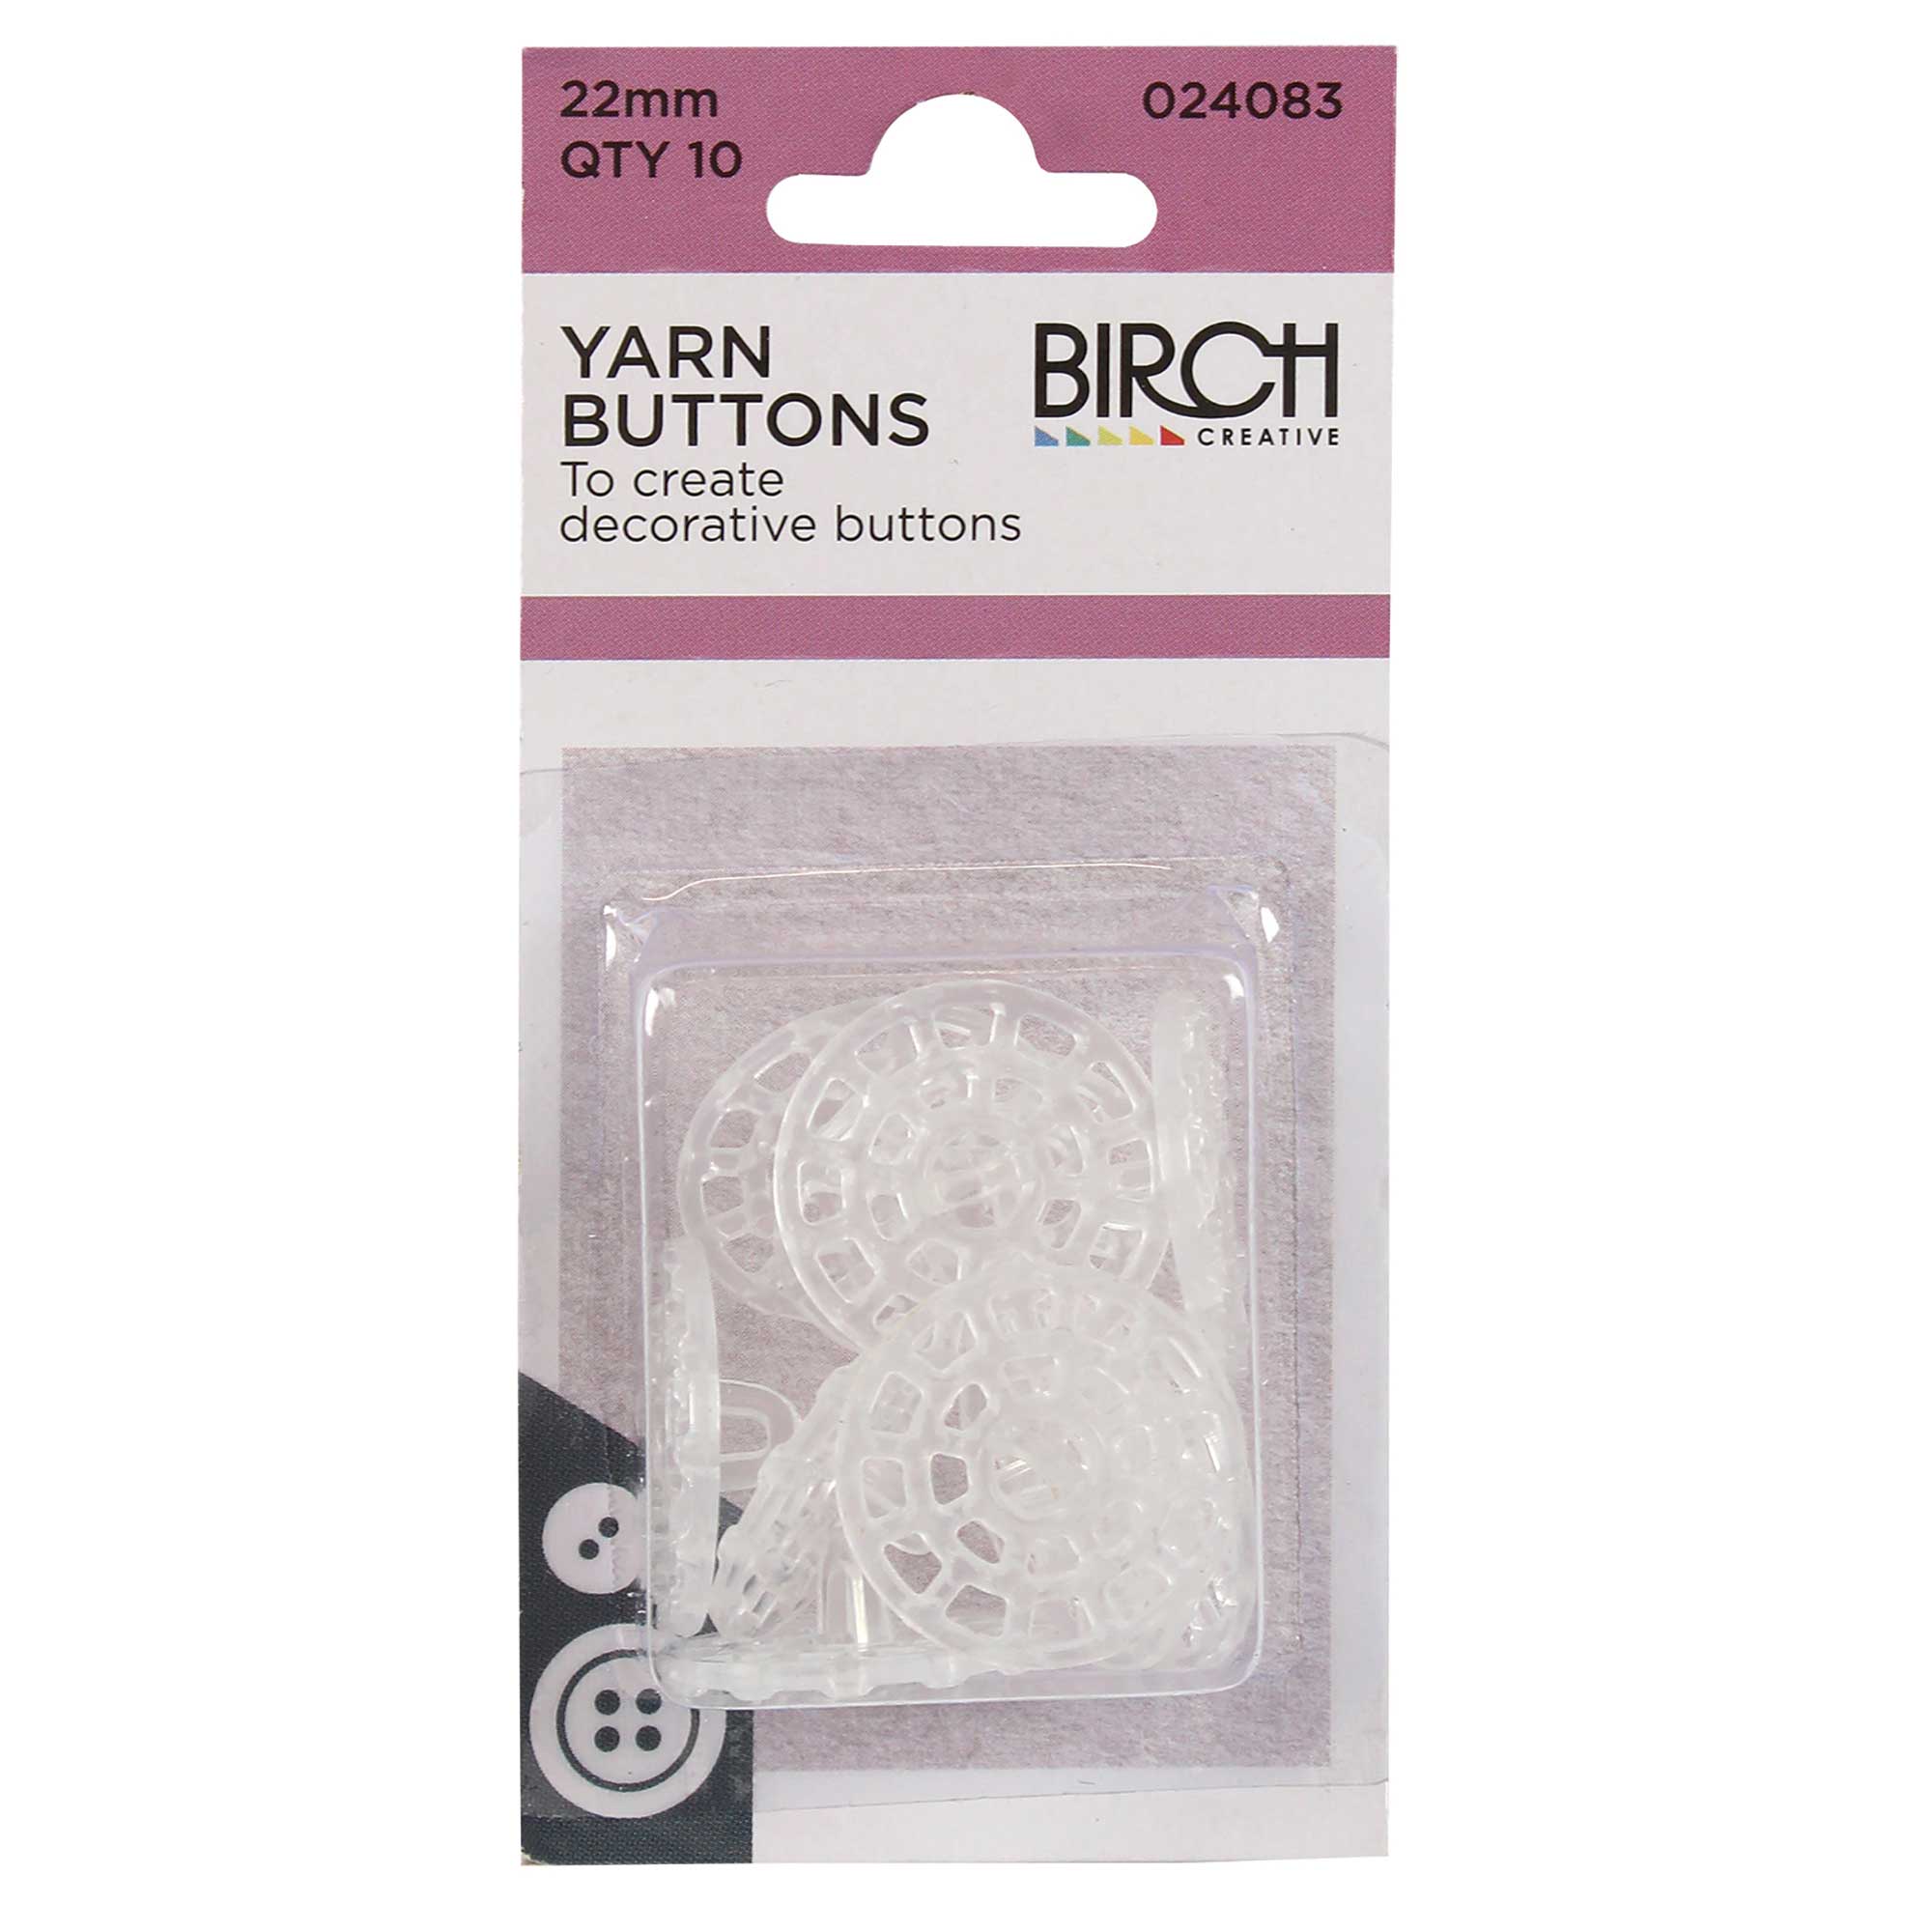 Yarn Buttons 22mm - Birch